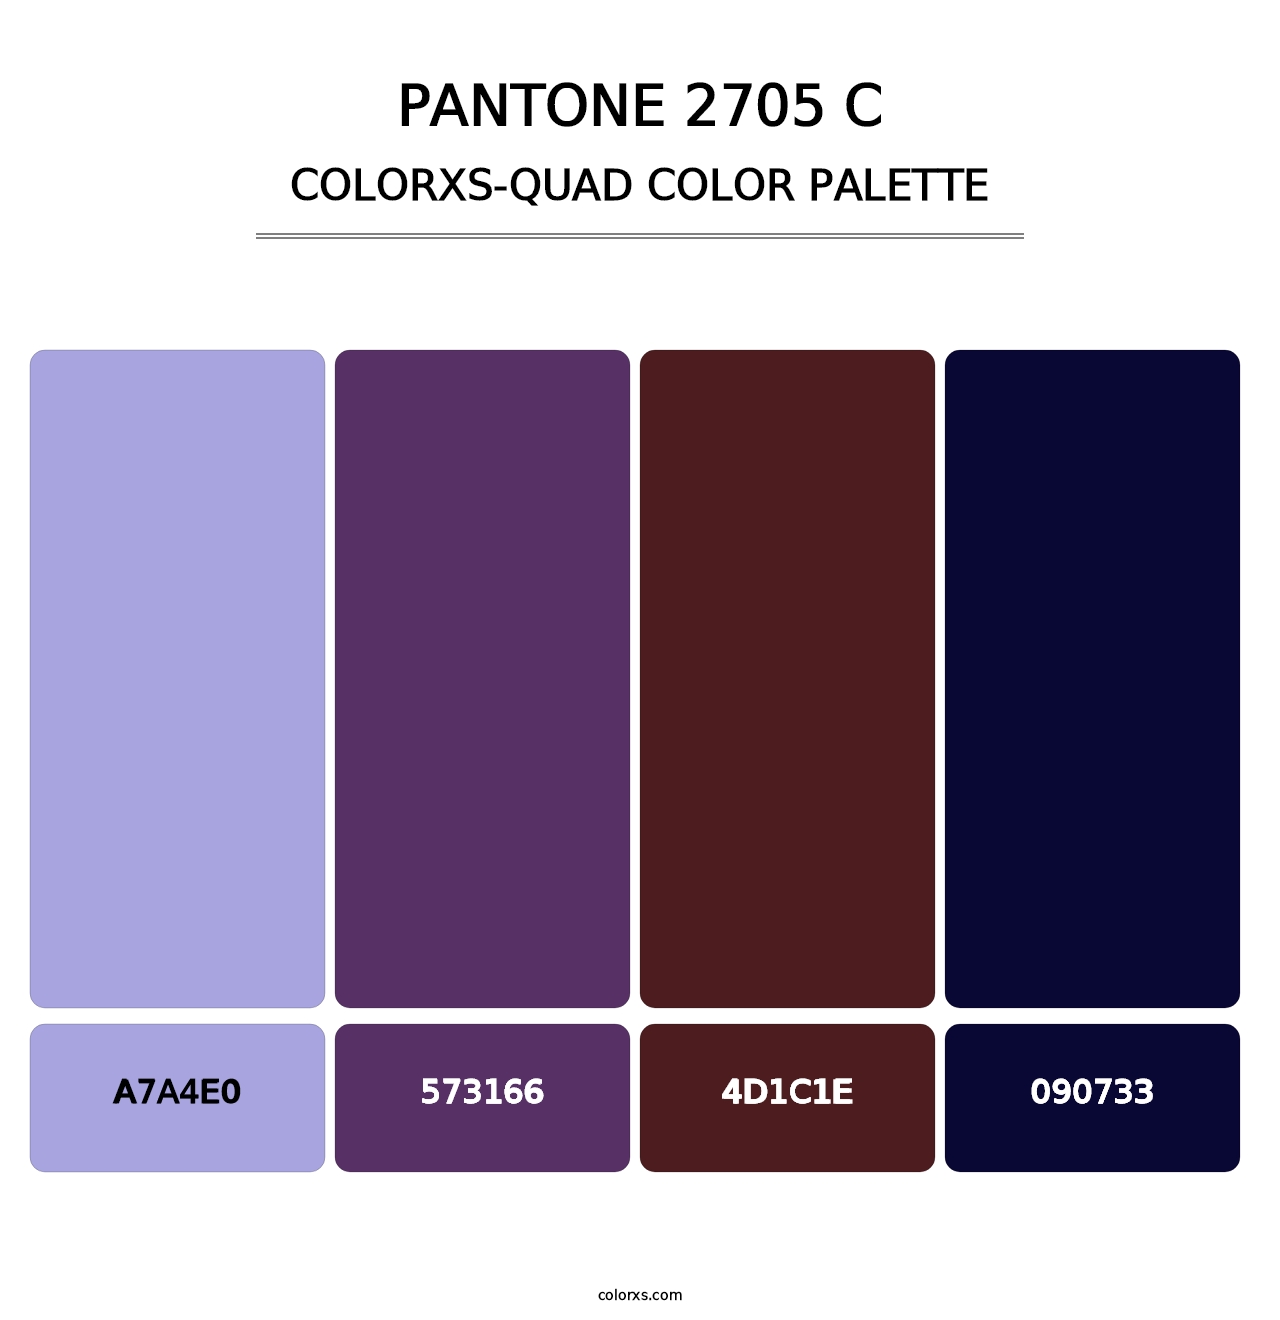 PANTONE 2705 C - Colorxs Quad Palette